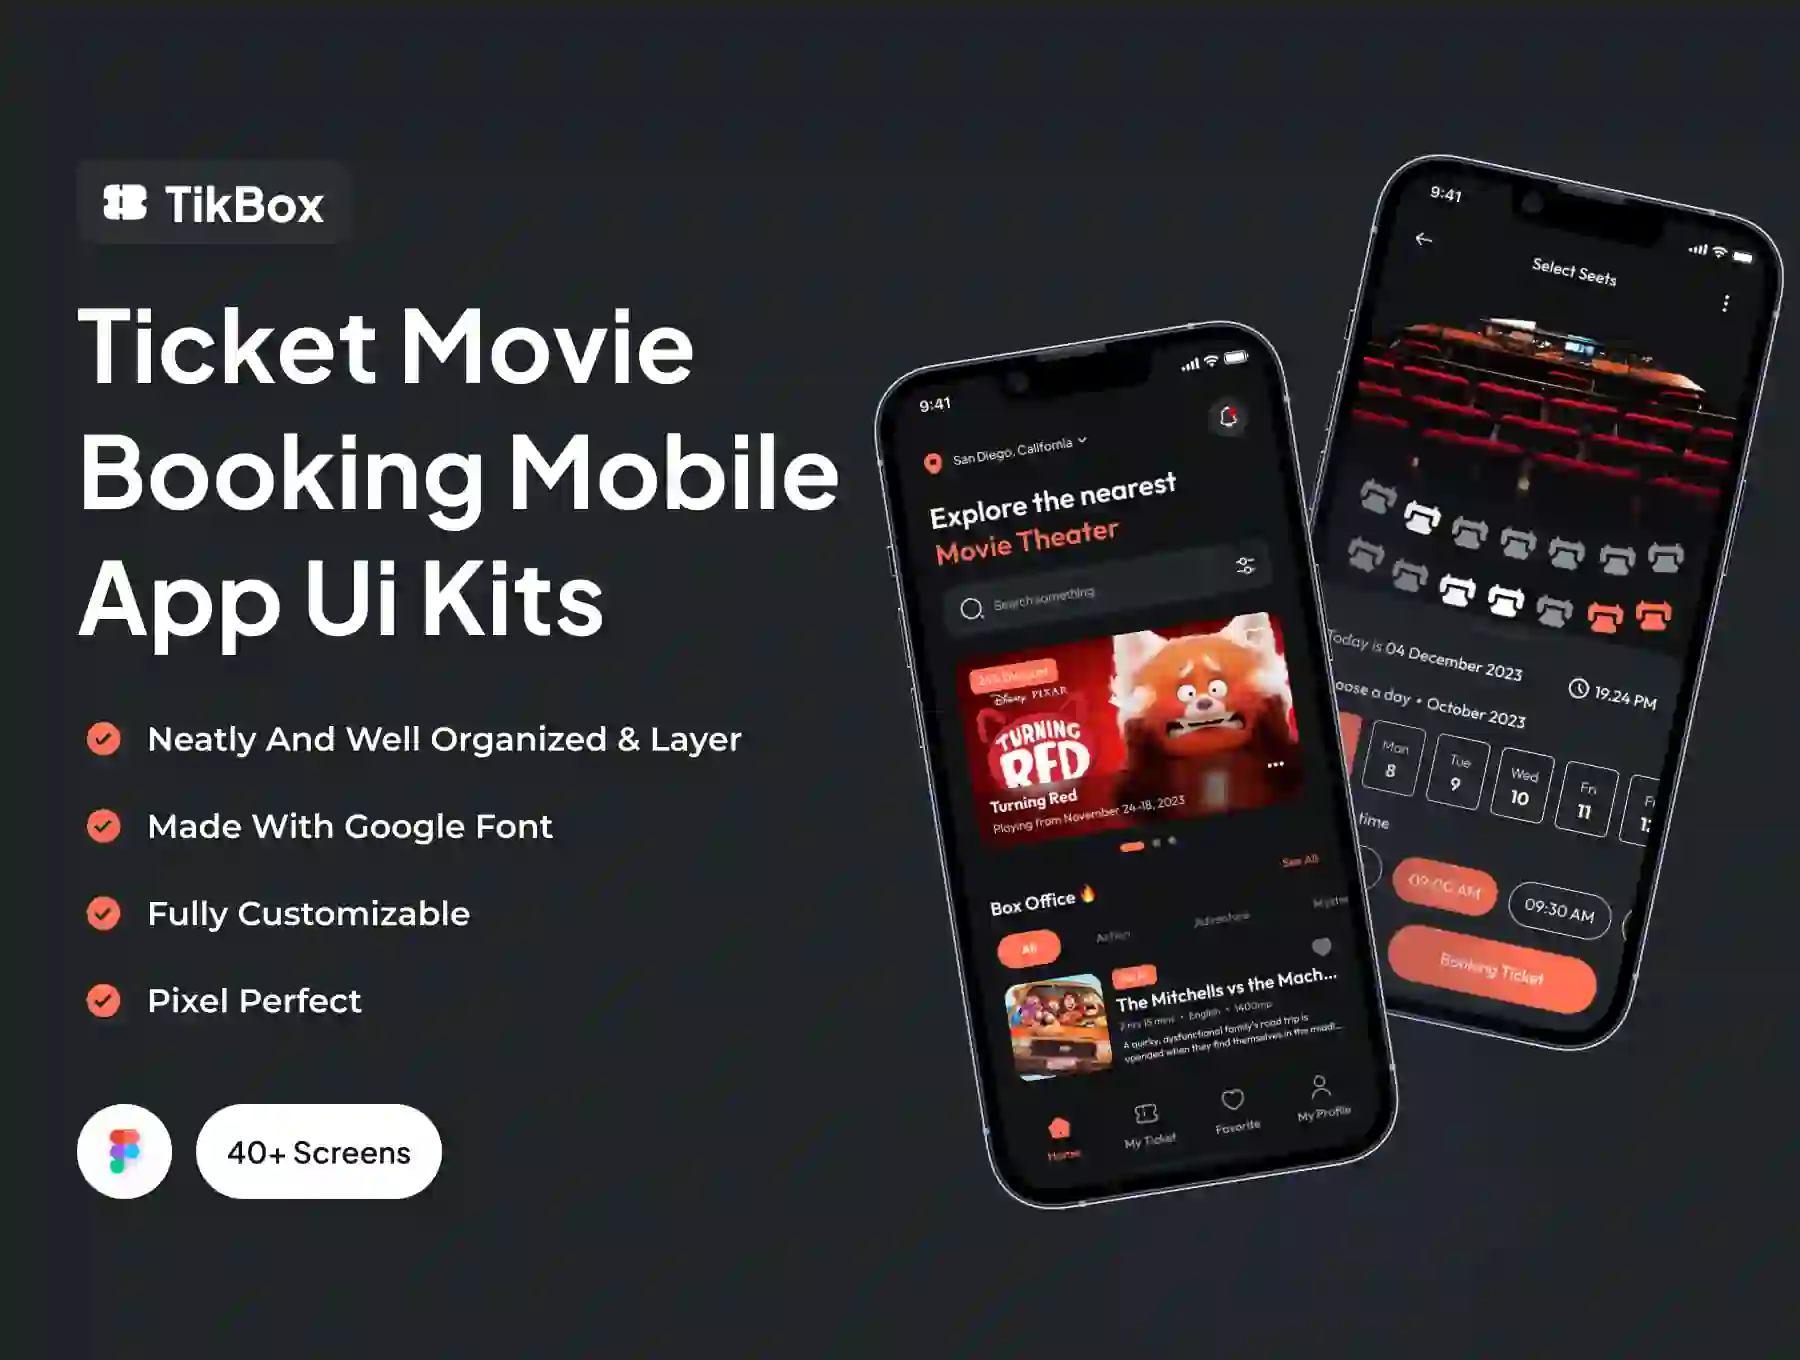 TikBox - Ticket Movie Booking Mobile App Ui Kits